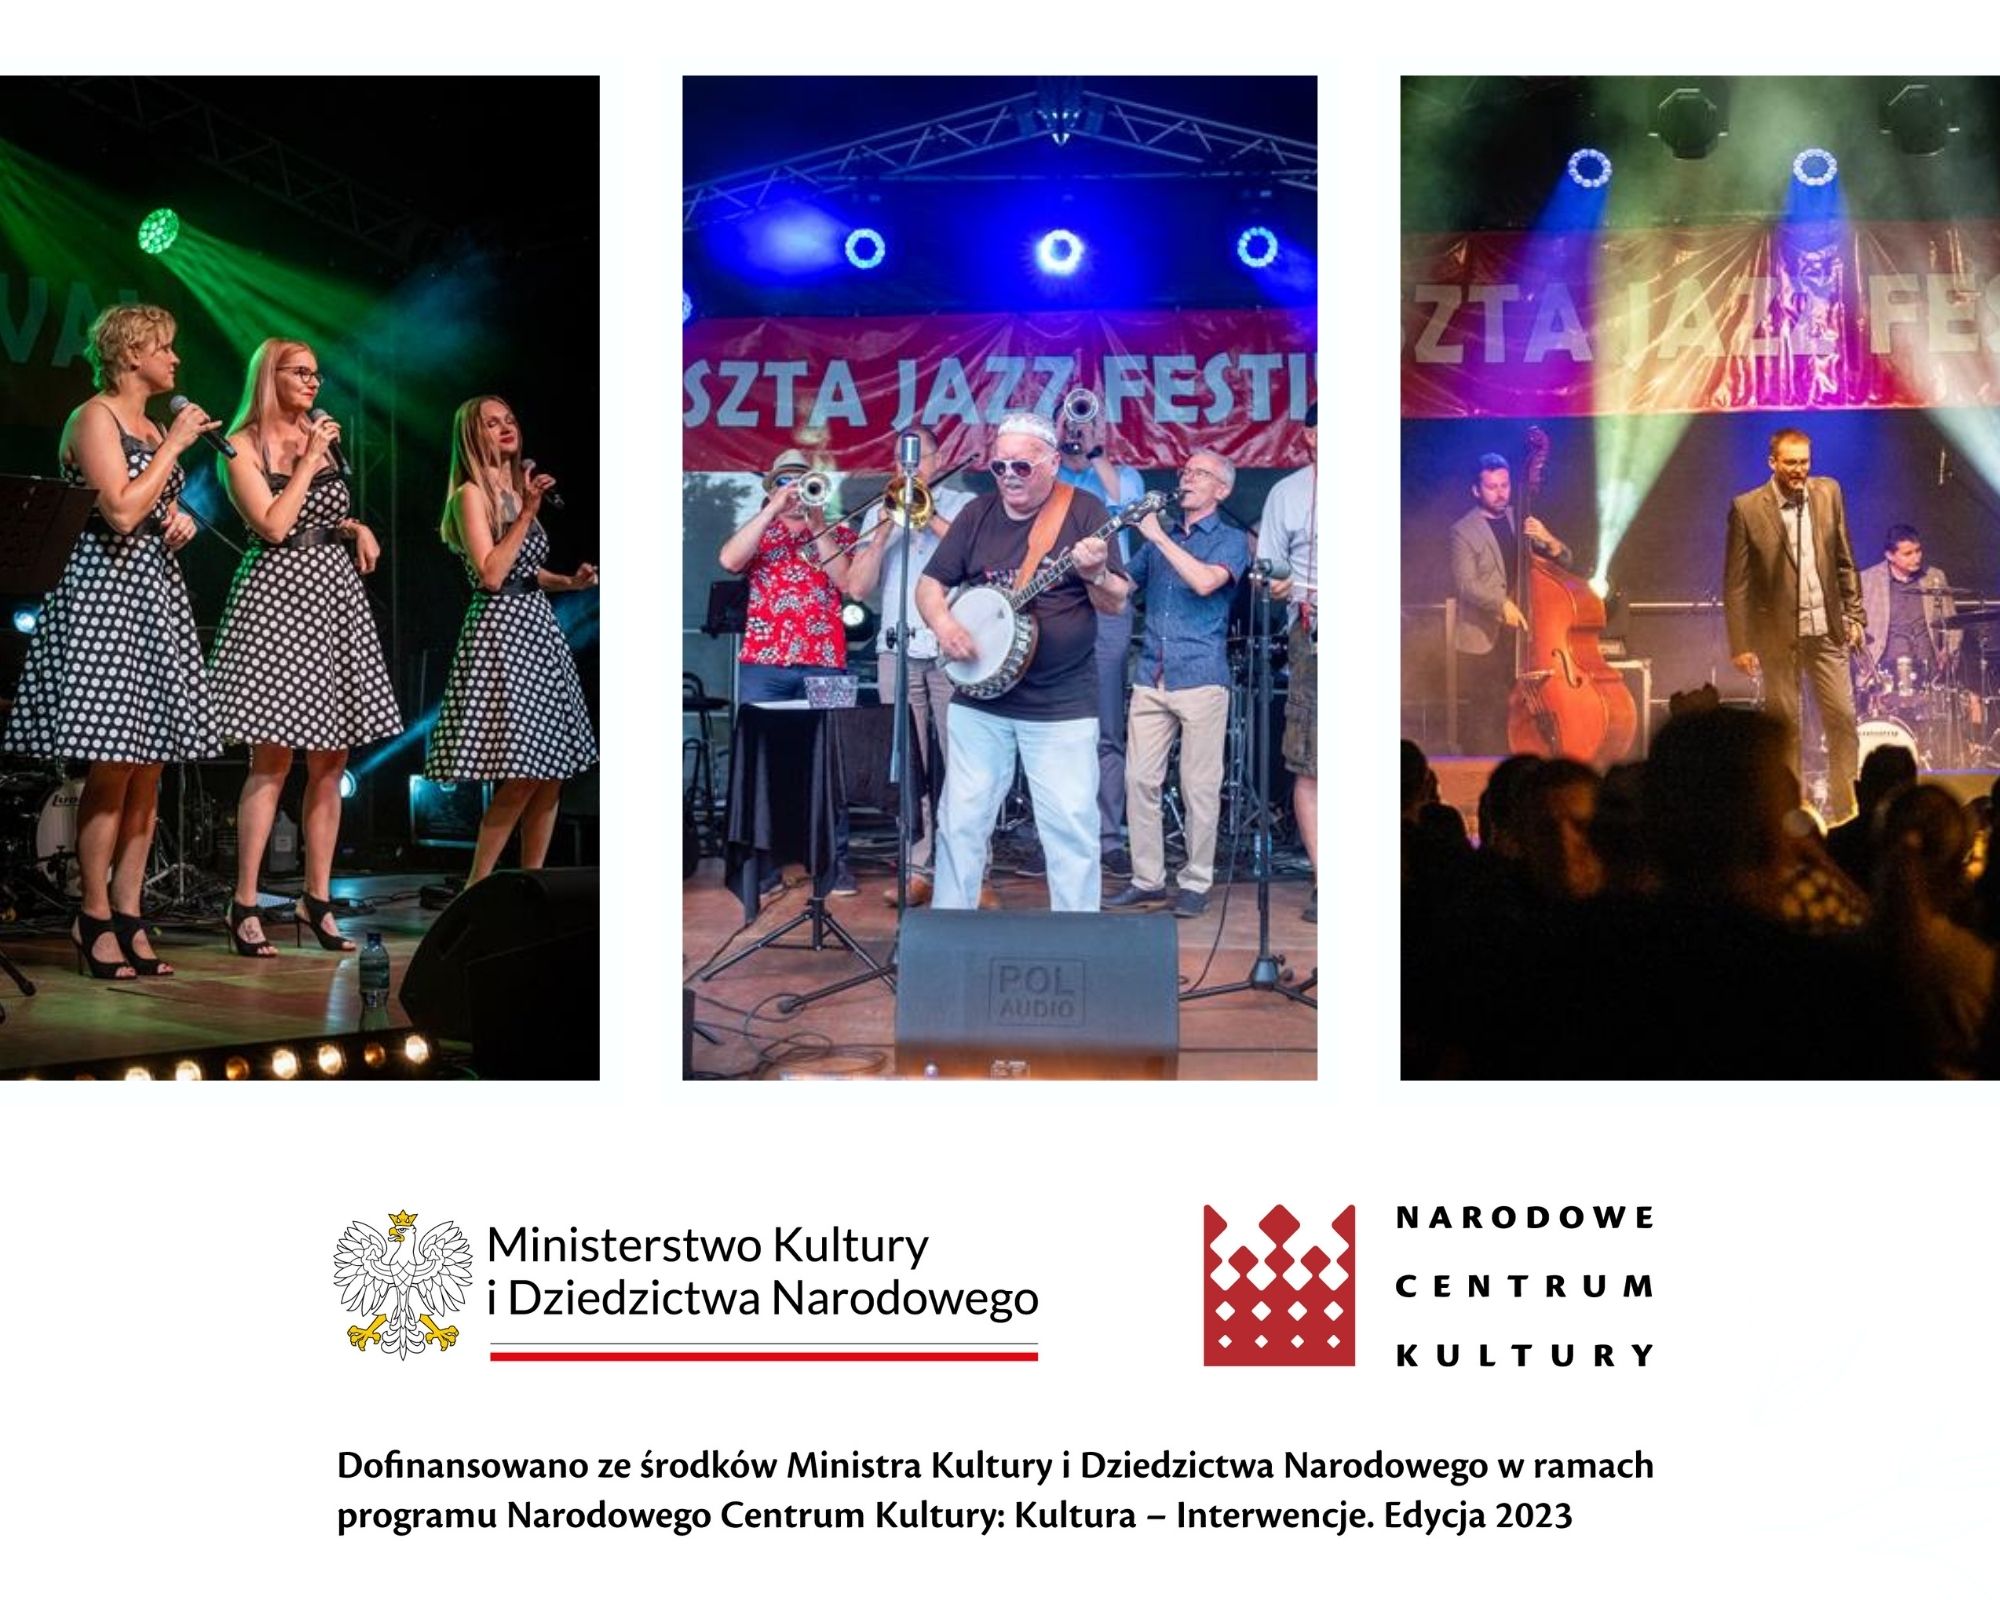 Przez 3 dni na czchowskich scenach wystąpiło 9 zespołów jazzowych. Był to czas przepełniony muzyką jazzową i miłymi spotkaniami. To właśnie był Baszta Jazz Festival,